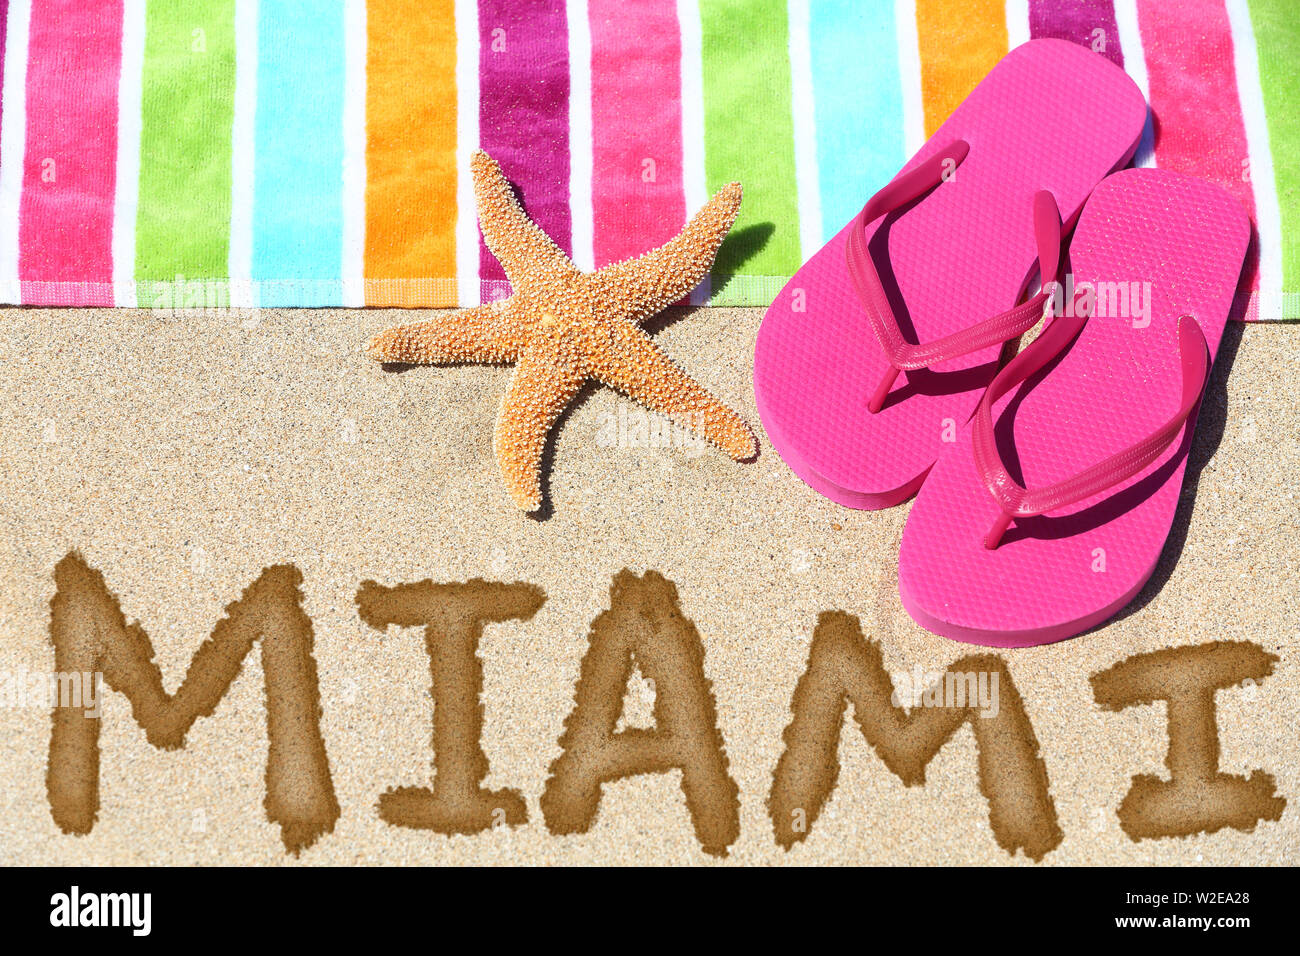 Miami, Florida Beach Travel Concept. MIAMI in Sand geschrieben mit Wasser neben Strandtuch, Sommer Sandalen und Seesterne. Sommer und Sonne Urlaub Ferien. Stockfoto